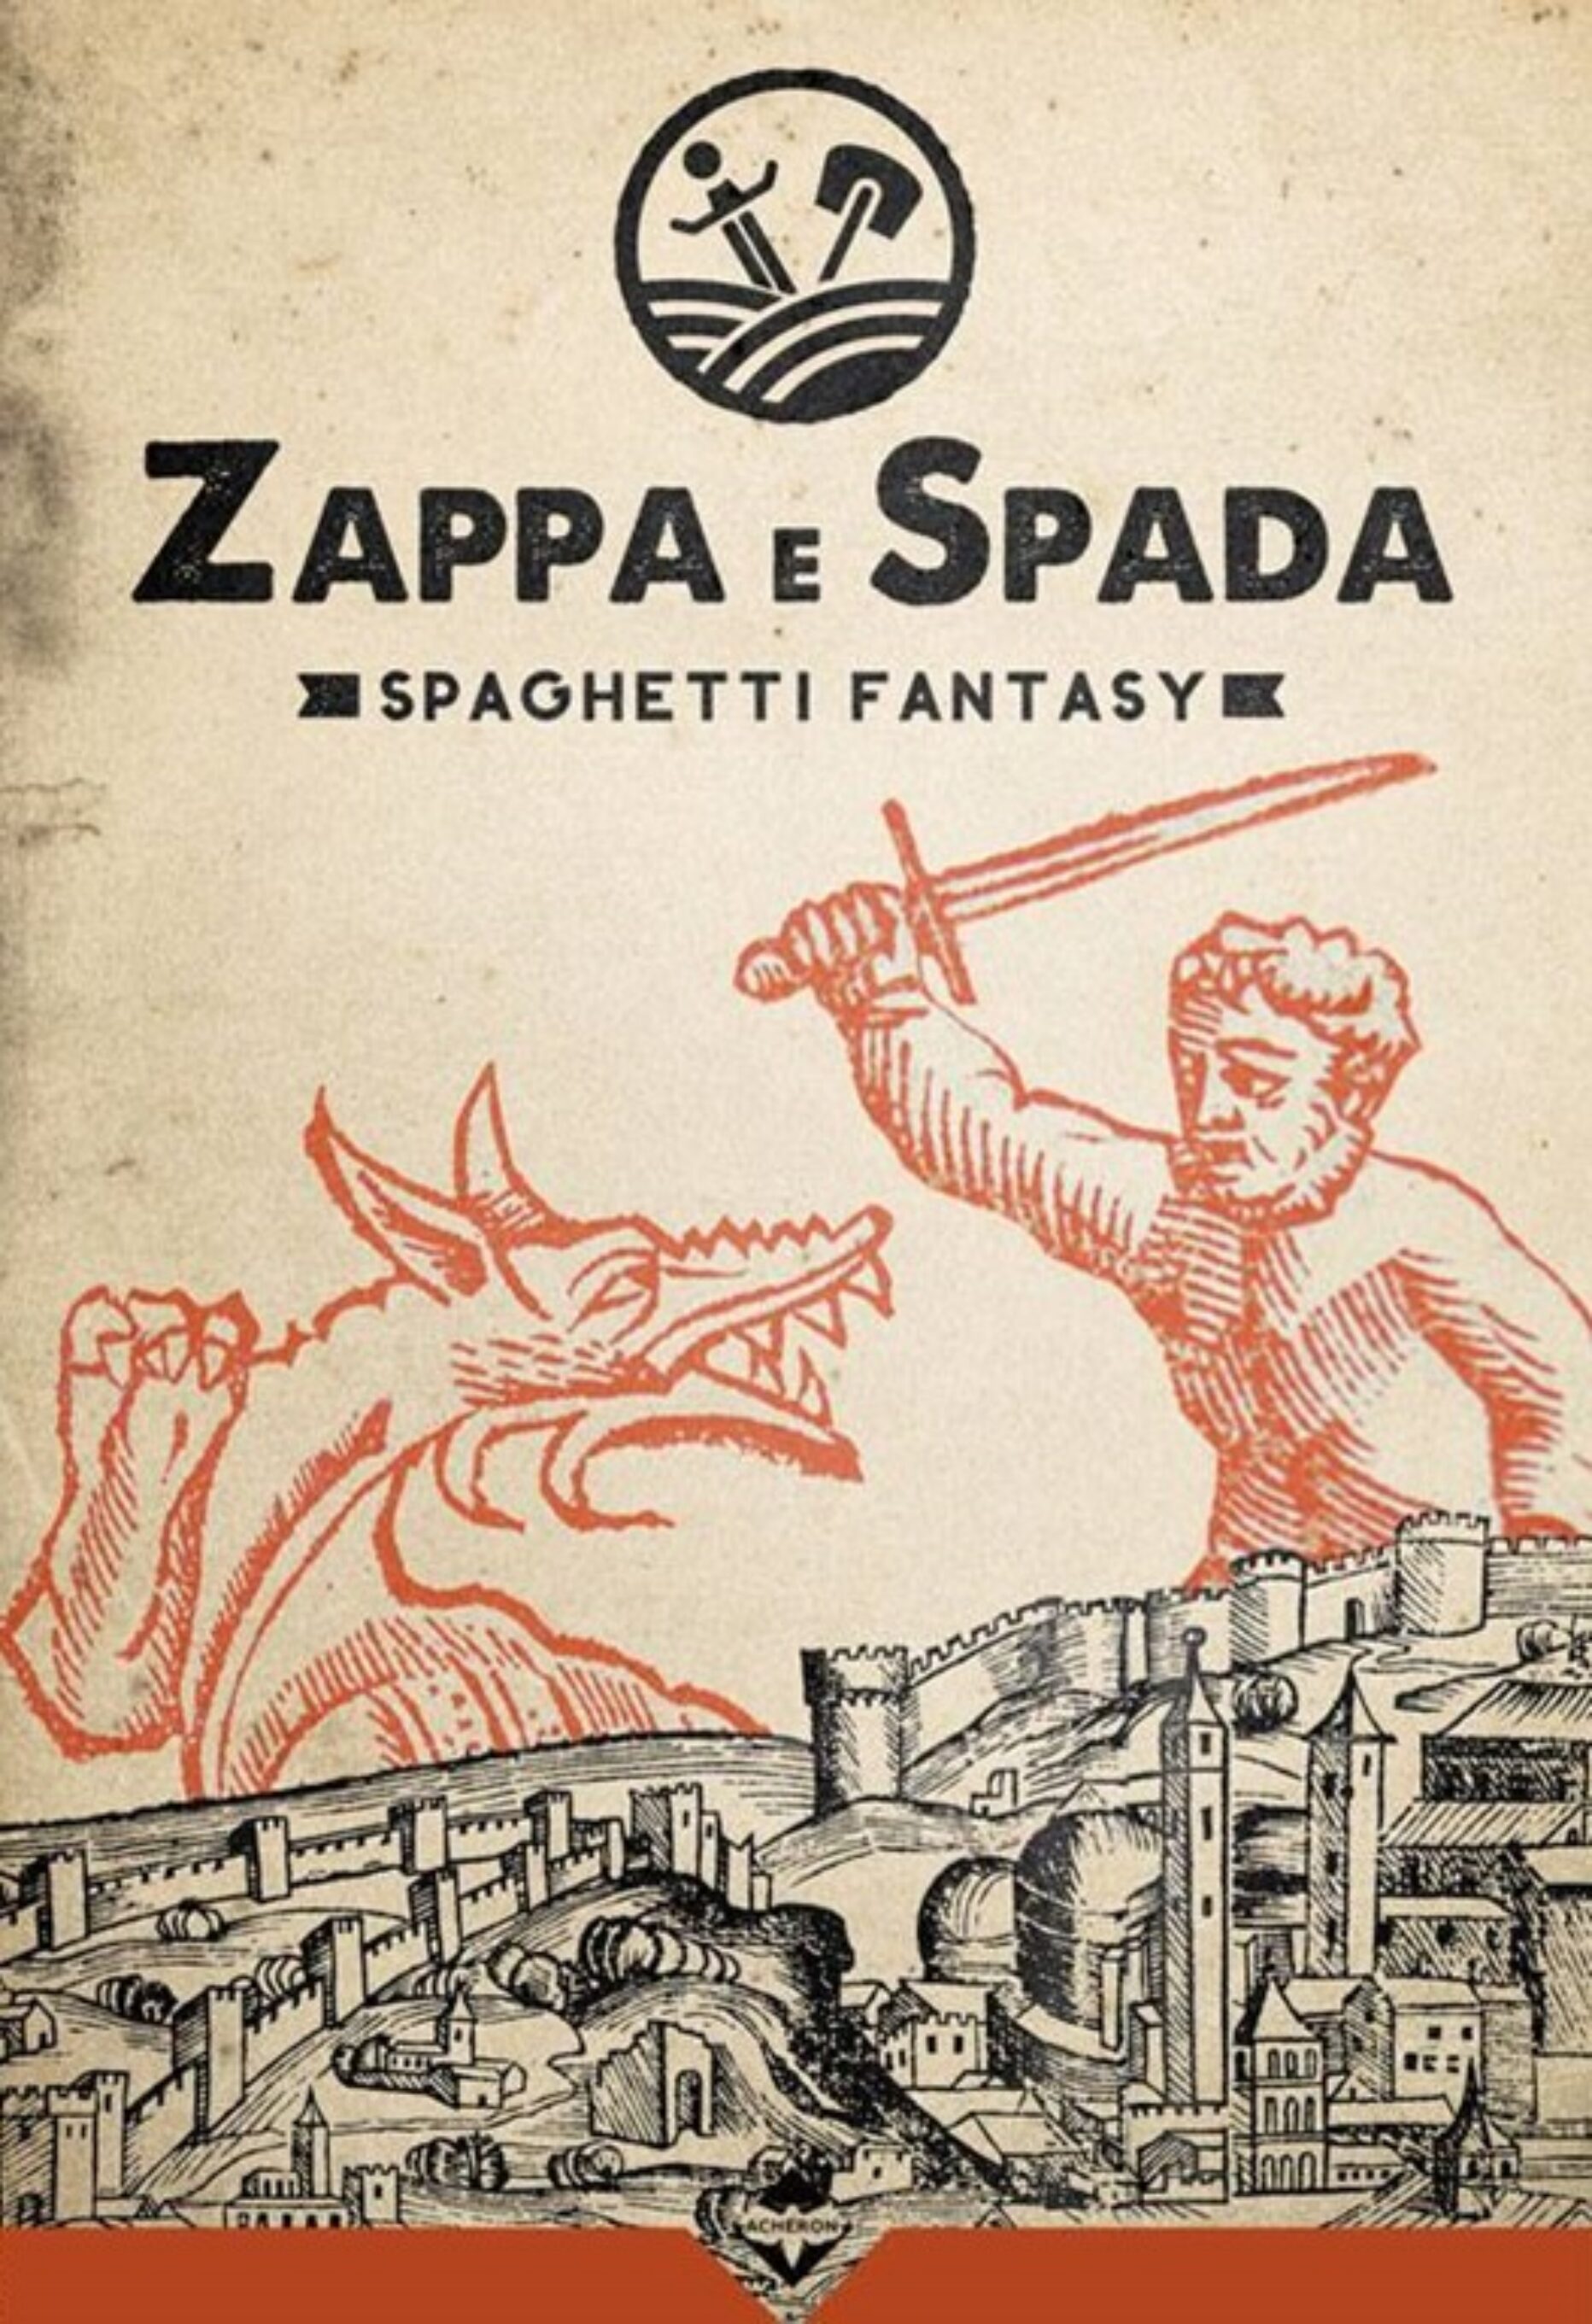 Zappa e Spada – viva lo spaghetti fantasy!